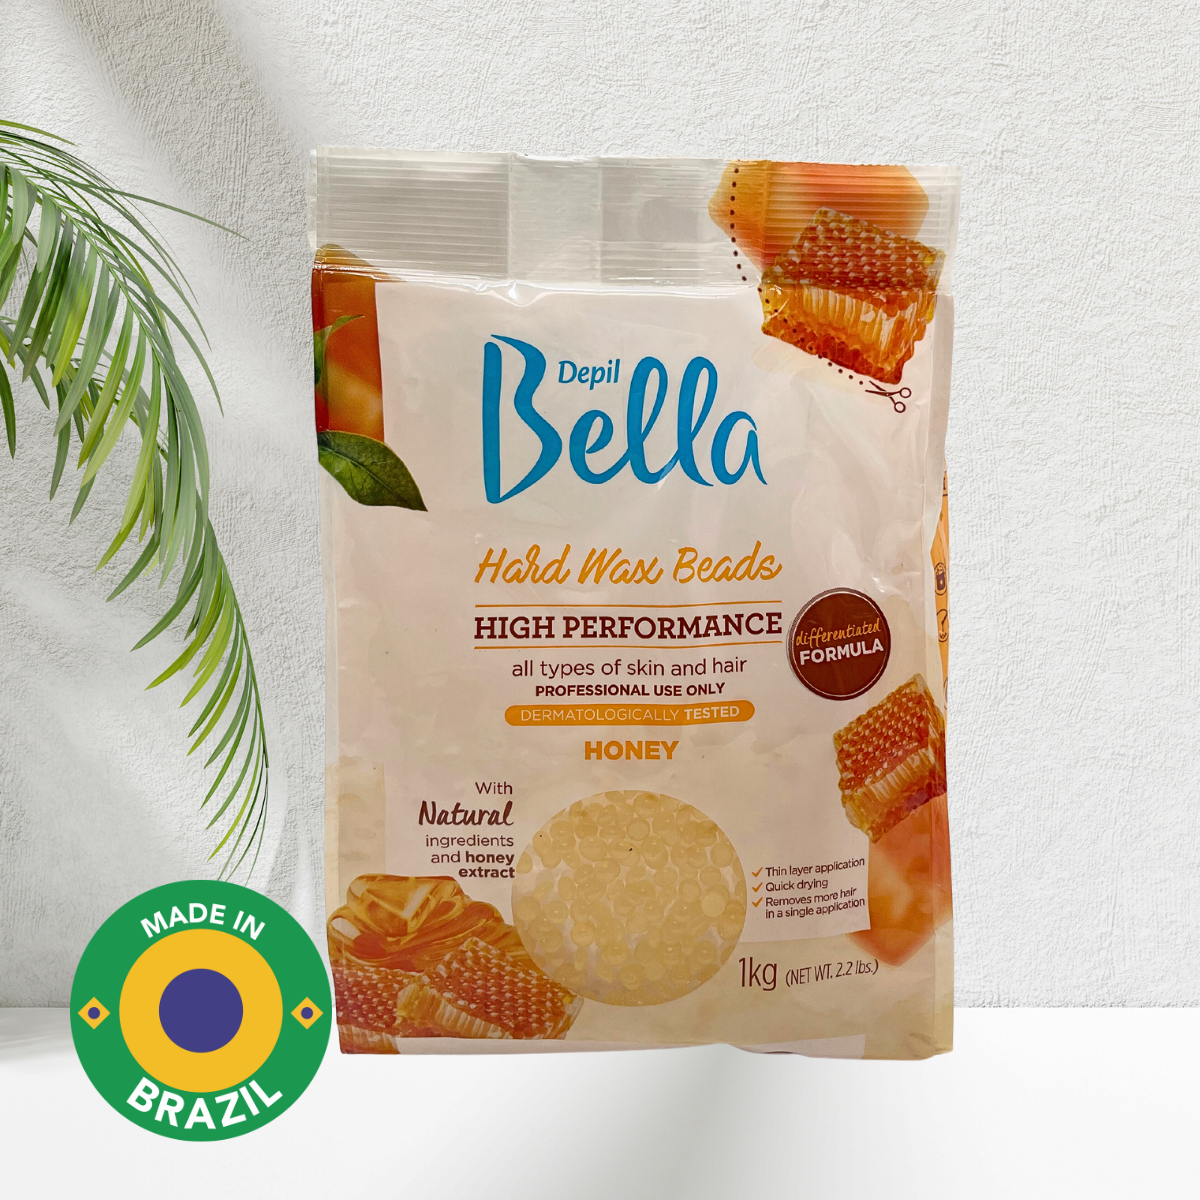 Depil Bella Hard Wax Beads Honey - Depilación Profesional, 2.2 lbs (Oferta de 20 Unidades)